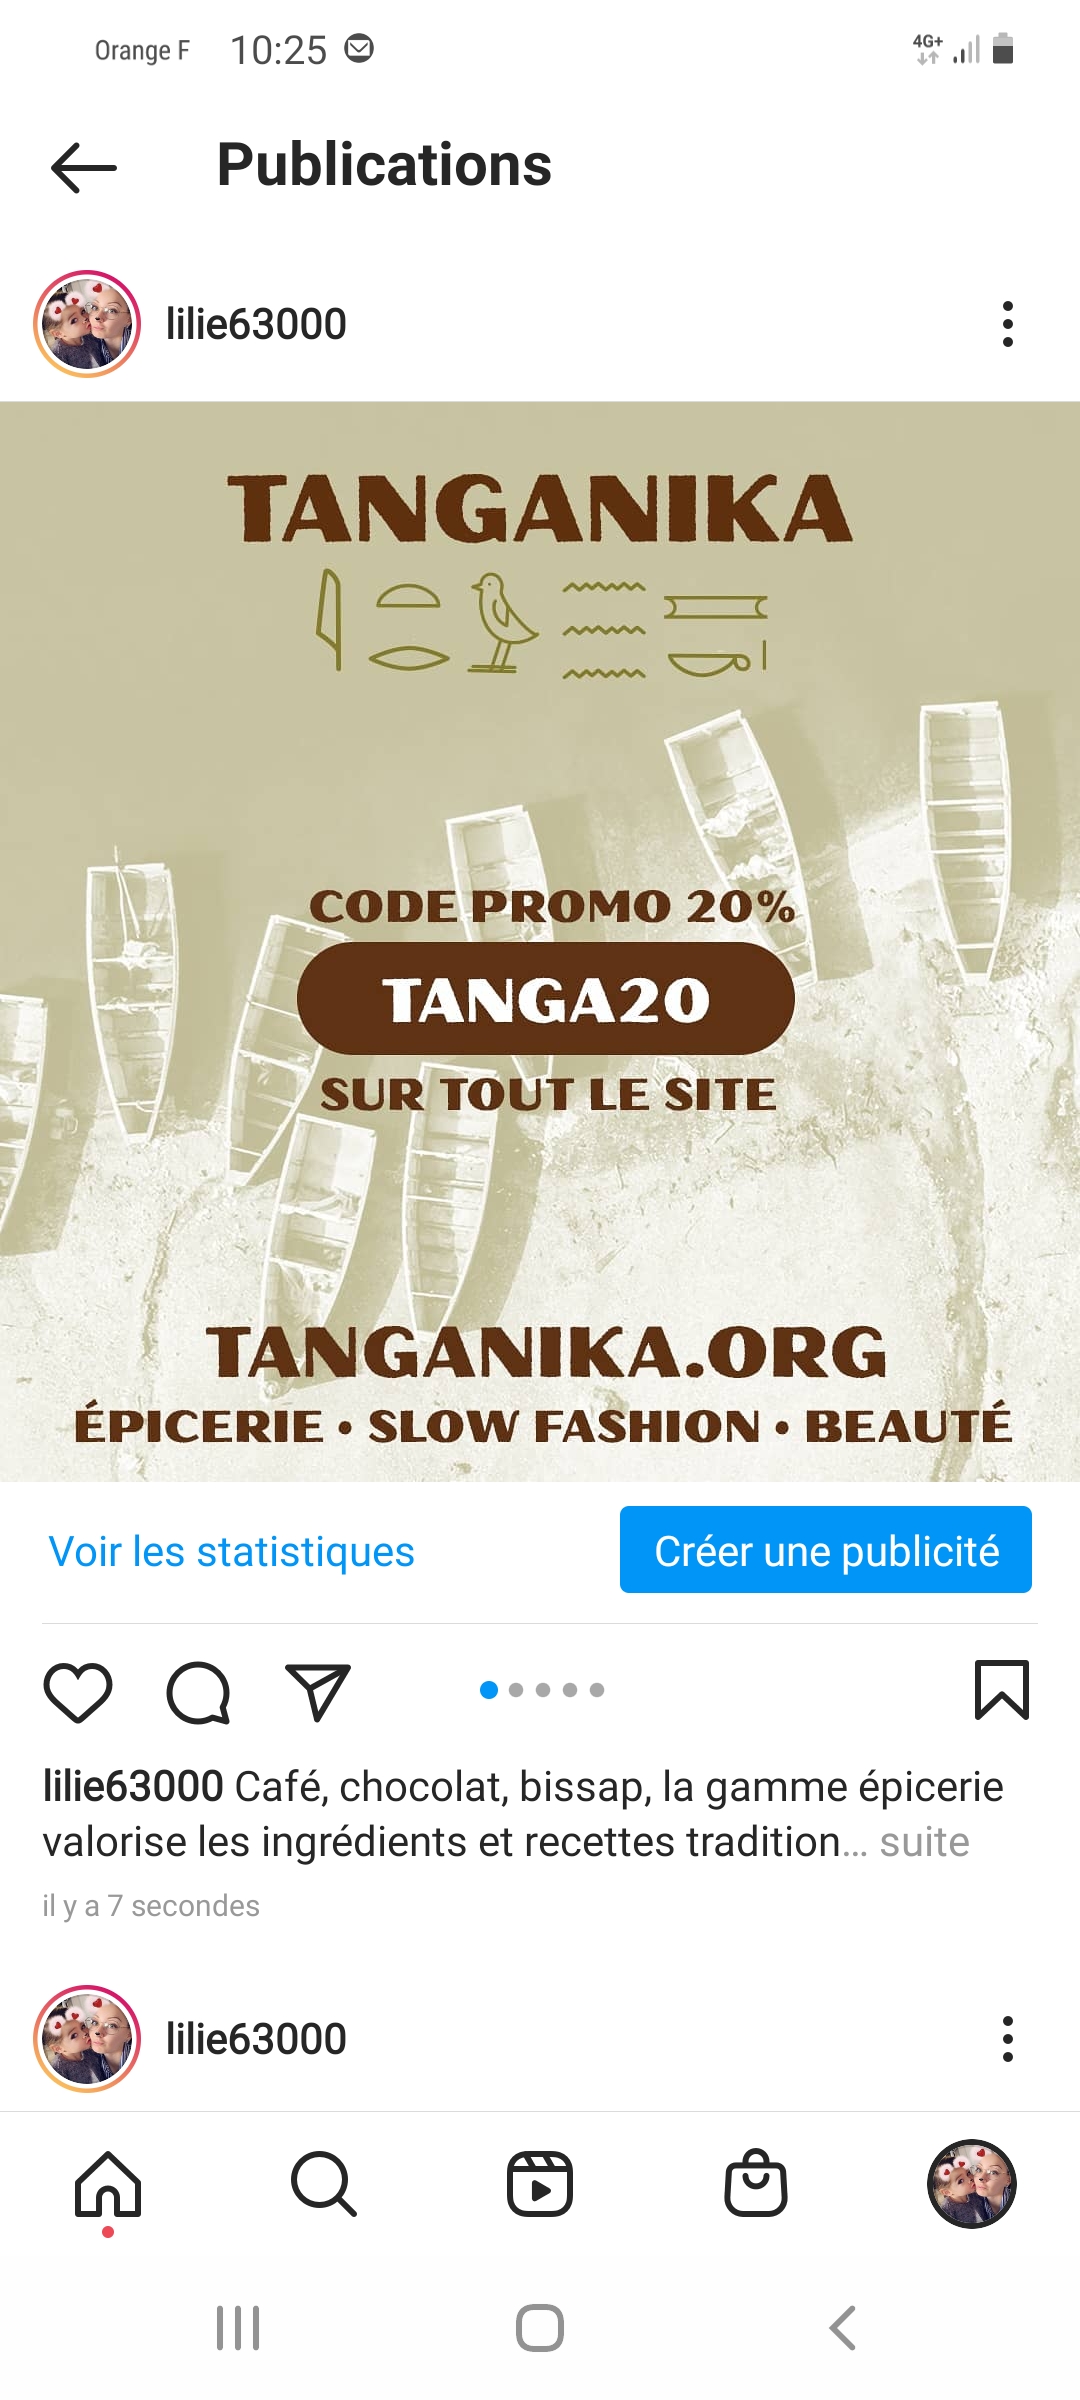 Promotion de la marque Tanganika épicerie